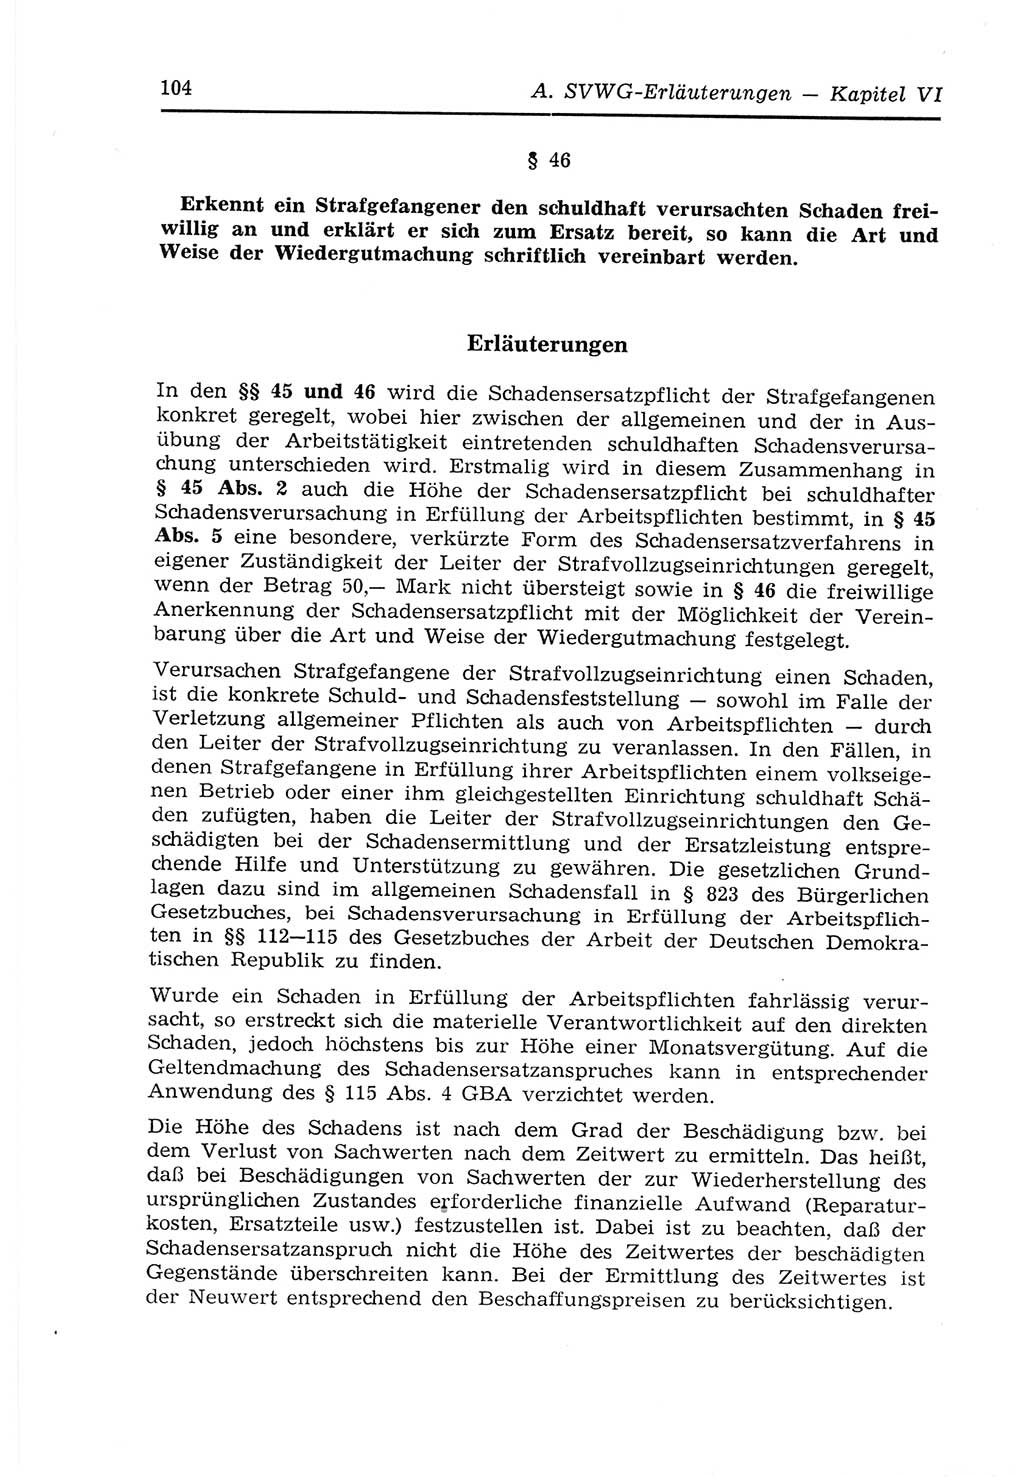 Strafvollzugs- und Wiedereingliederungsgesetz (SVWG) der Deutschen Demokratischen Republik (DDR) 1968, Seite 104 (SVWG DDR 1968, S. 104)